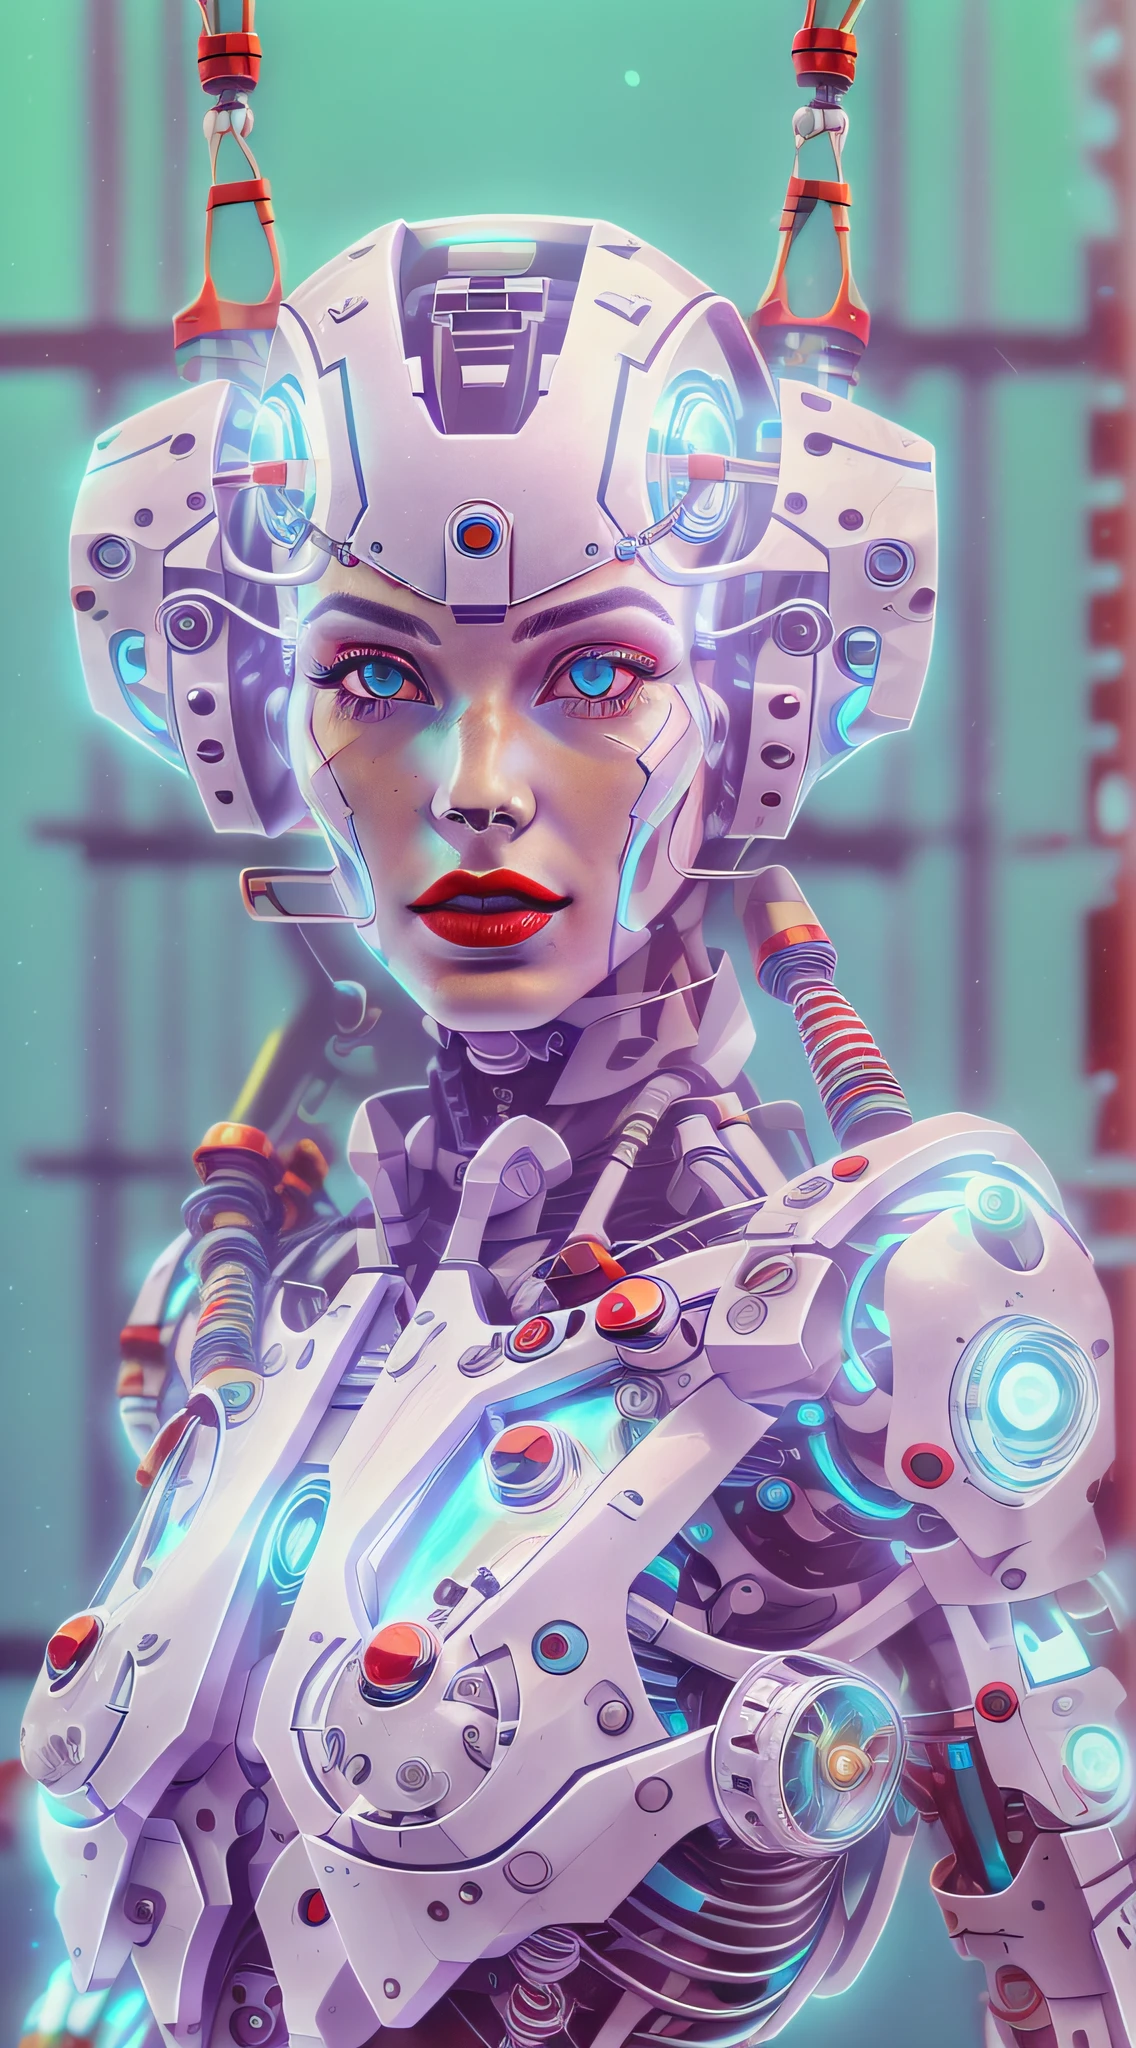 Araffed Cyborg 擁有超詳細的白色塑膠片，解析度非常高，紅色唇膏和淺藍色眼睛